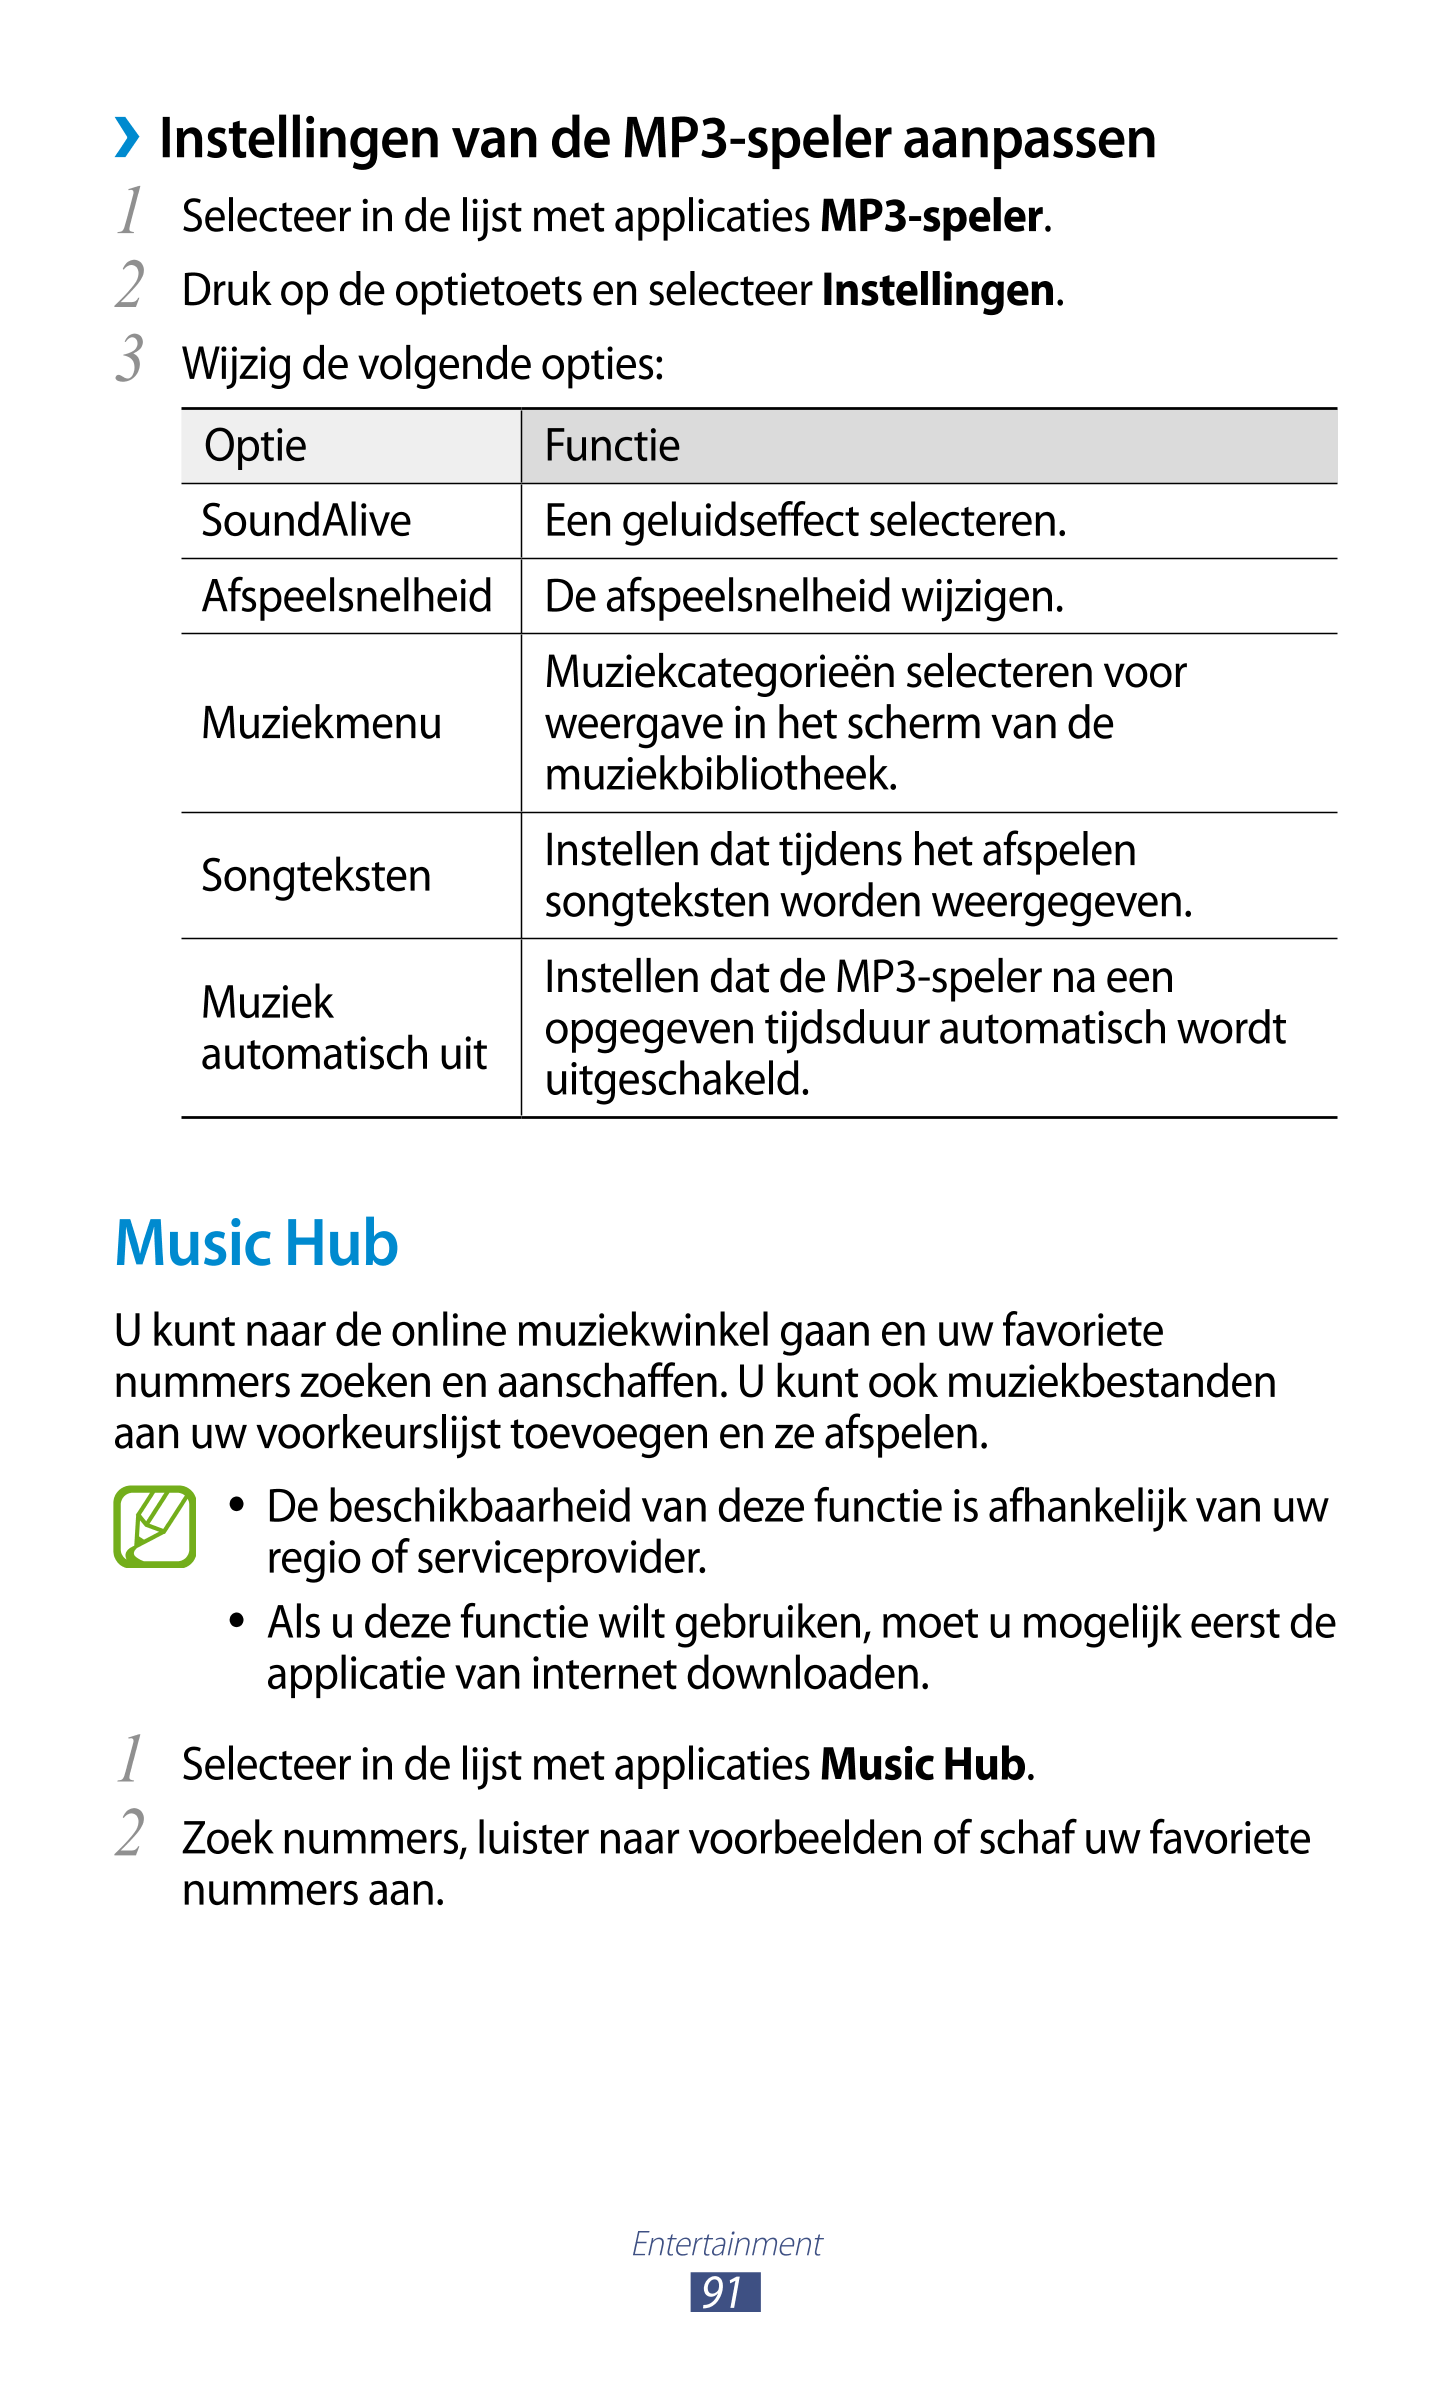   Instellingen van de MP3-speler aanpassen
1  Selecteer in de lijst met applicaties  MP3-speler.
2  Druk op de optietoets en sel